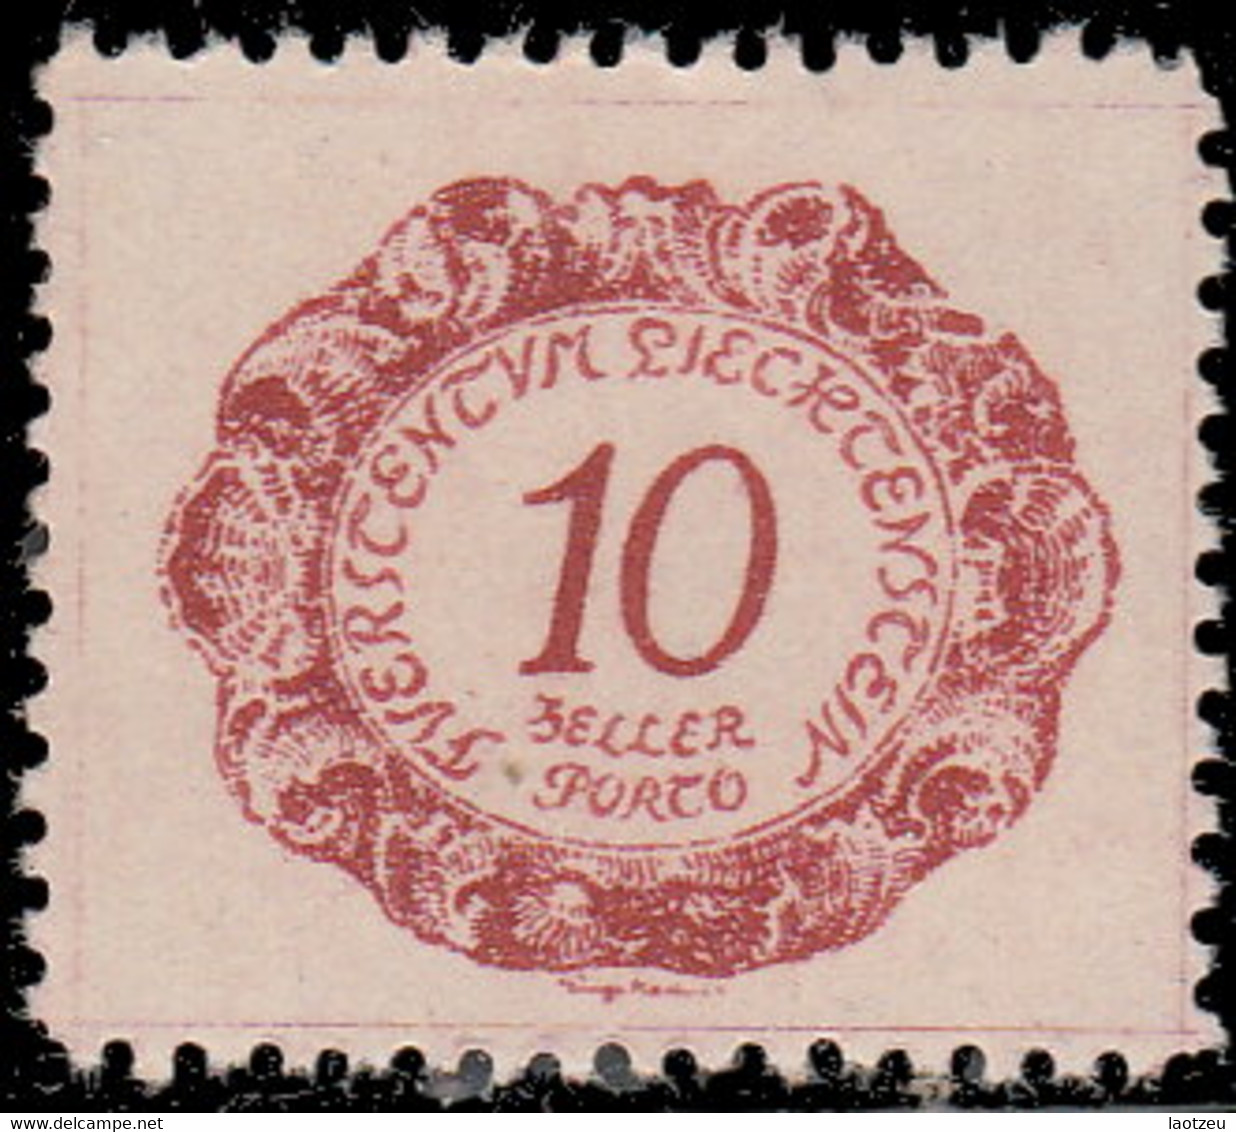 Liechtenstein Taxe 1920. ~ T 2/6/8* - Timbres Taxe - Segnatasse